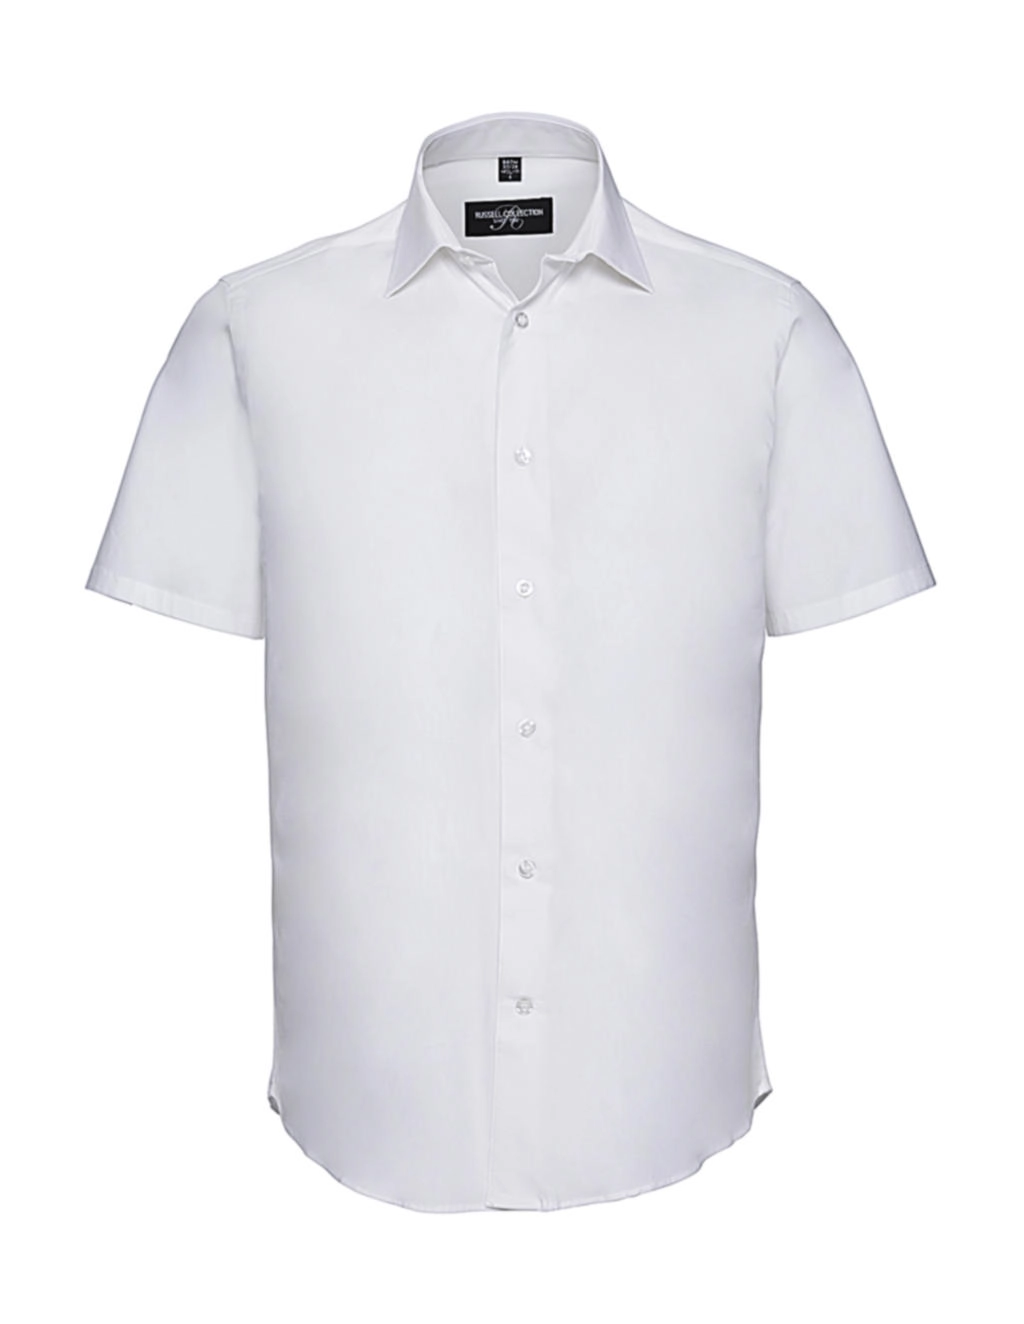 Fitted Stretch Shirt zum Besticken und Bedrucken in der Farbe White mit Ihren Logo, Schriftzug oder Motiv.